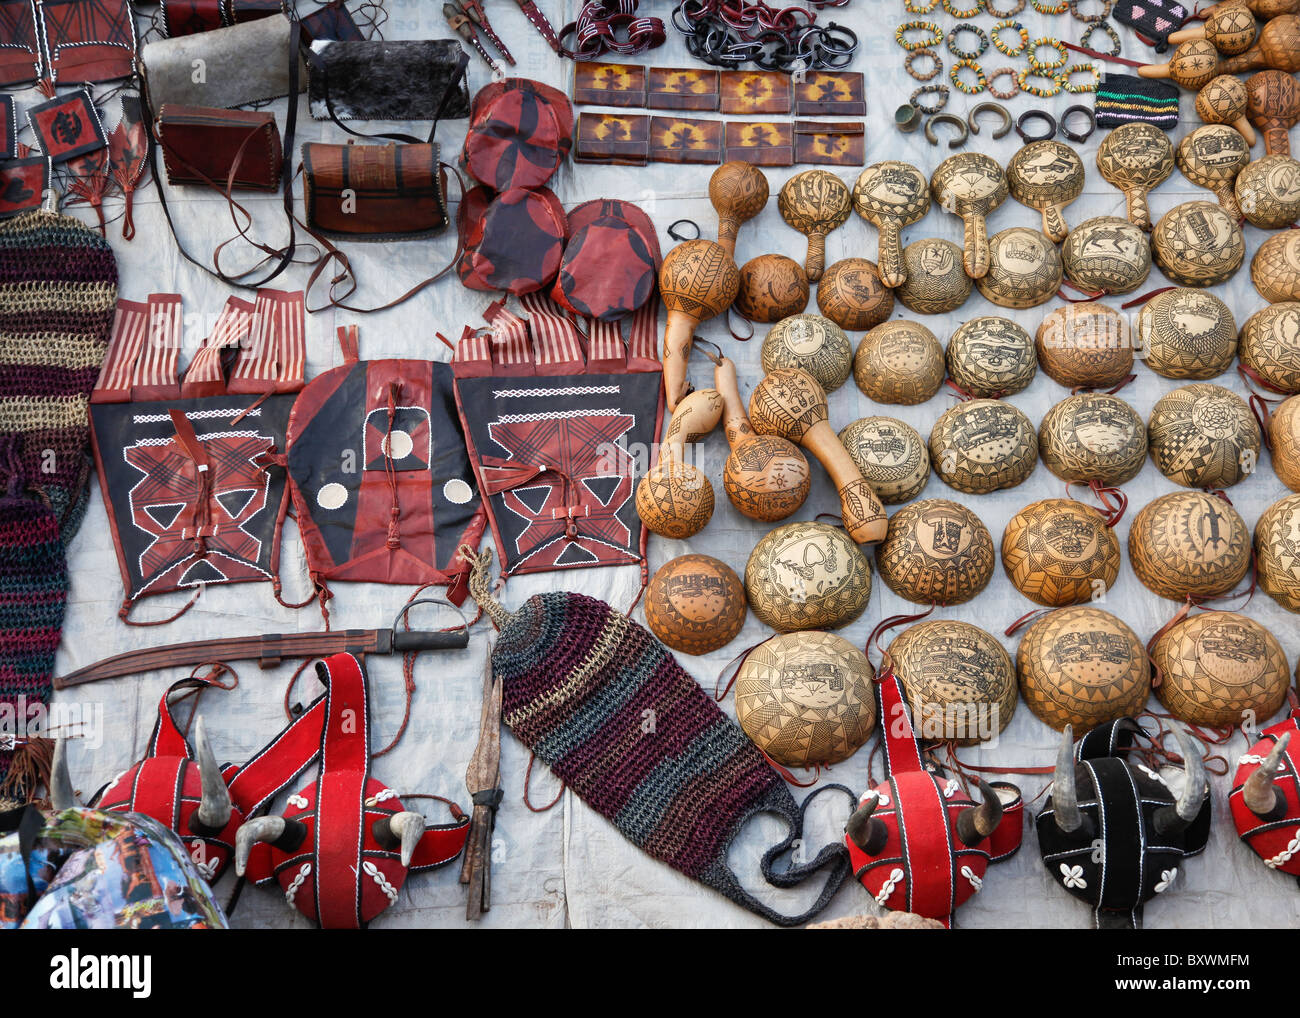 Deux fois par an lors du 12e Salon International de l'artisanat de Ouagadougou (SIAO) au Burkina Faso, les vendeurs vendent divers objets artisanaux. Banque D'Images